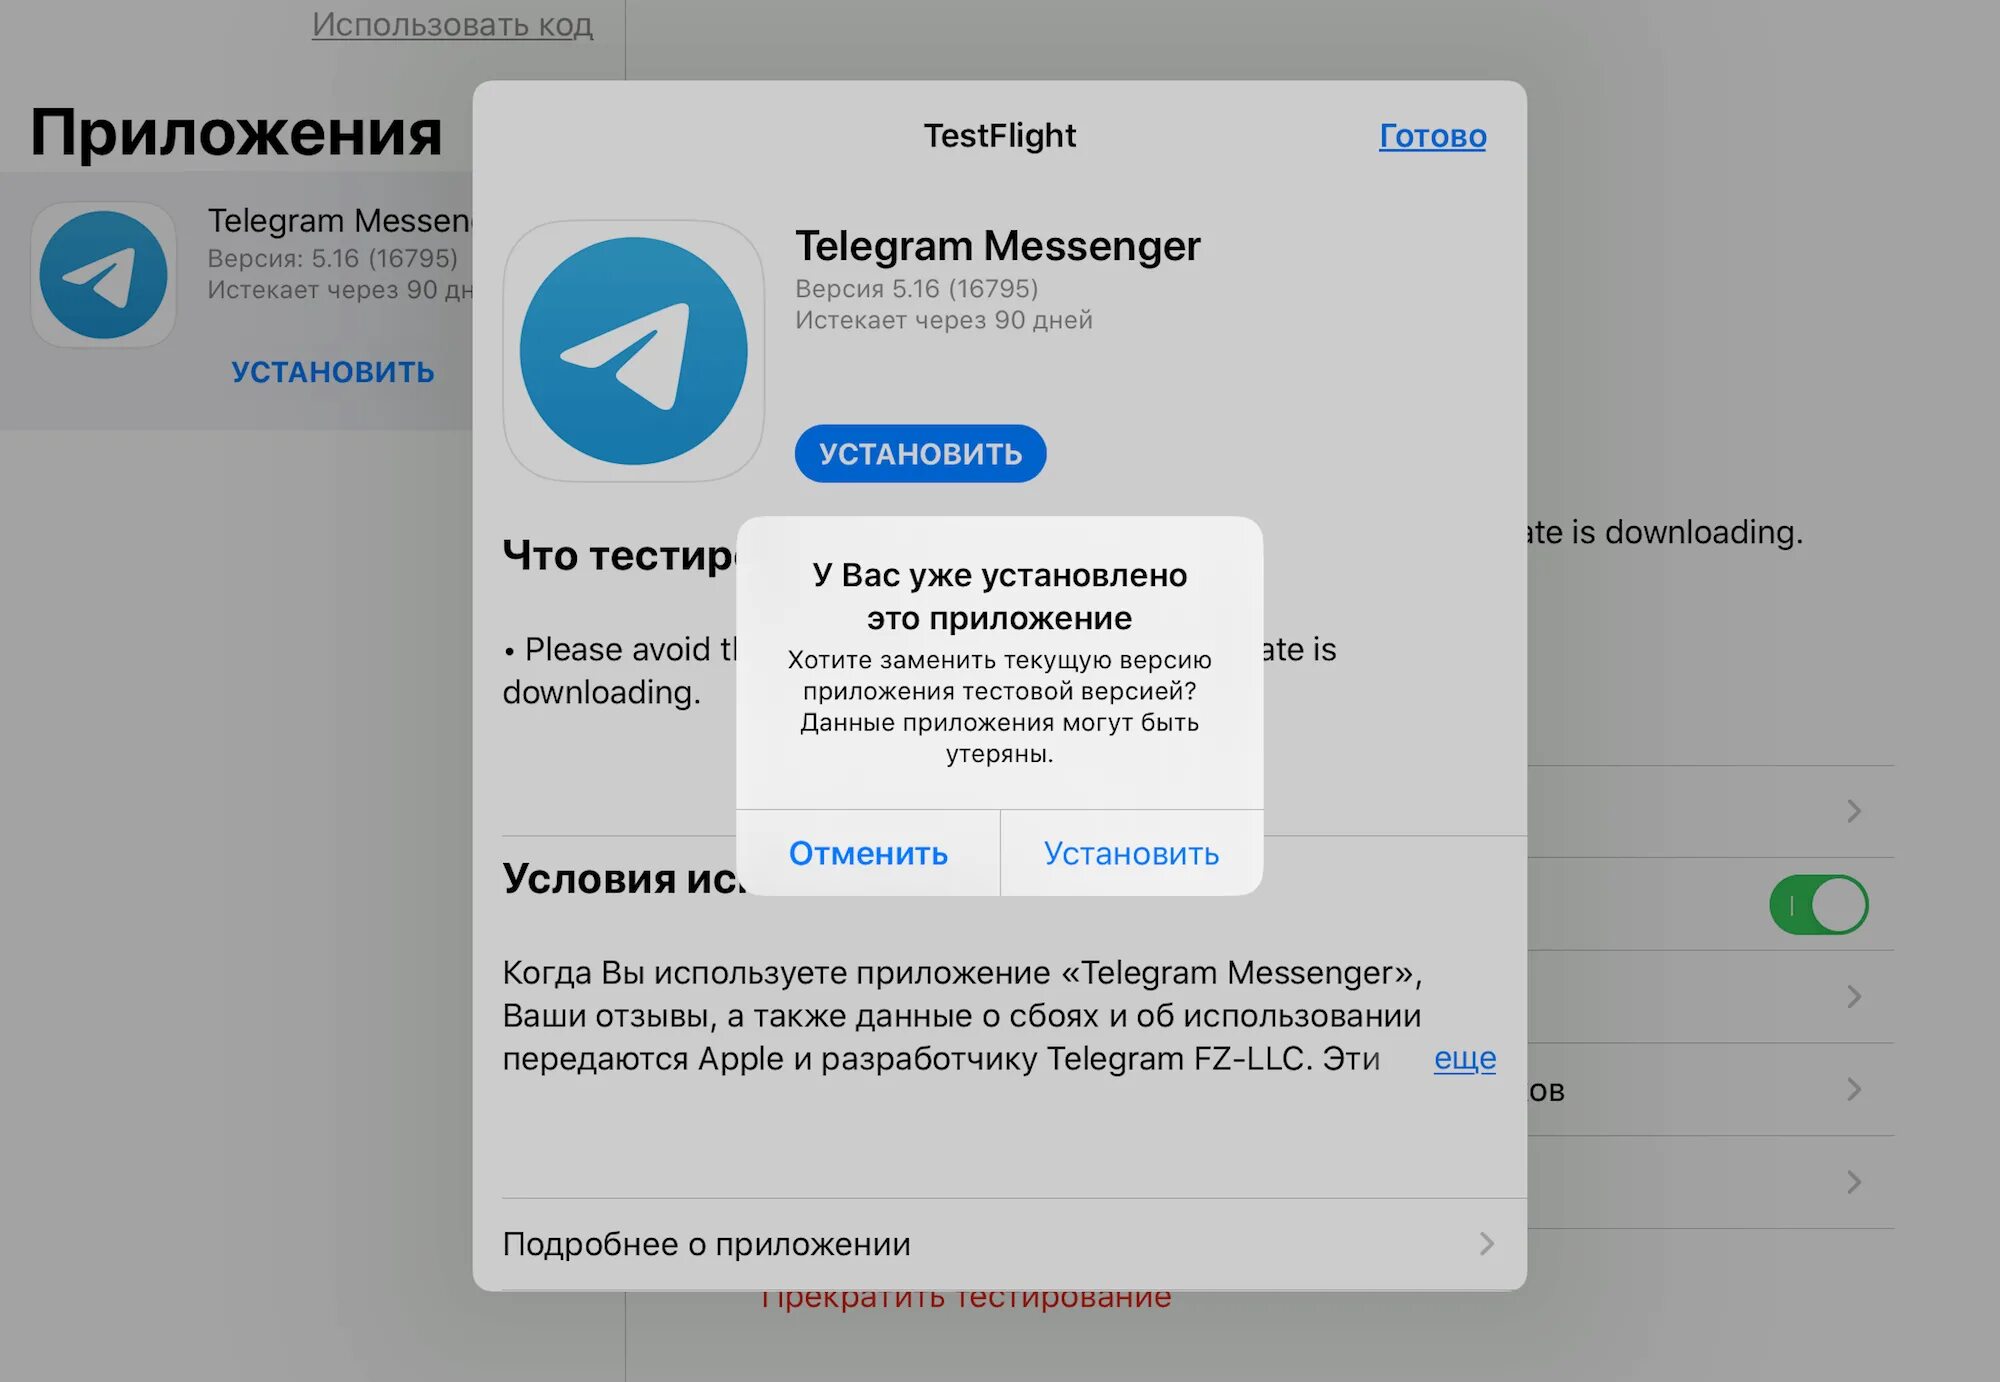 Истекшая ссылка срок действия ссылки истек телеграм. Программа телеграмм. Telegram приложение. Телеграмм приложение загрузить. Телеграмм ссылка на скачивание.